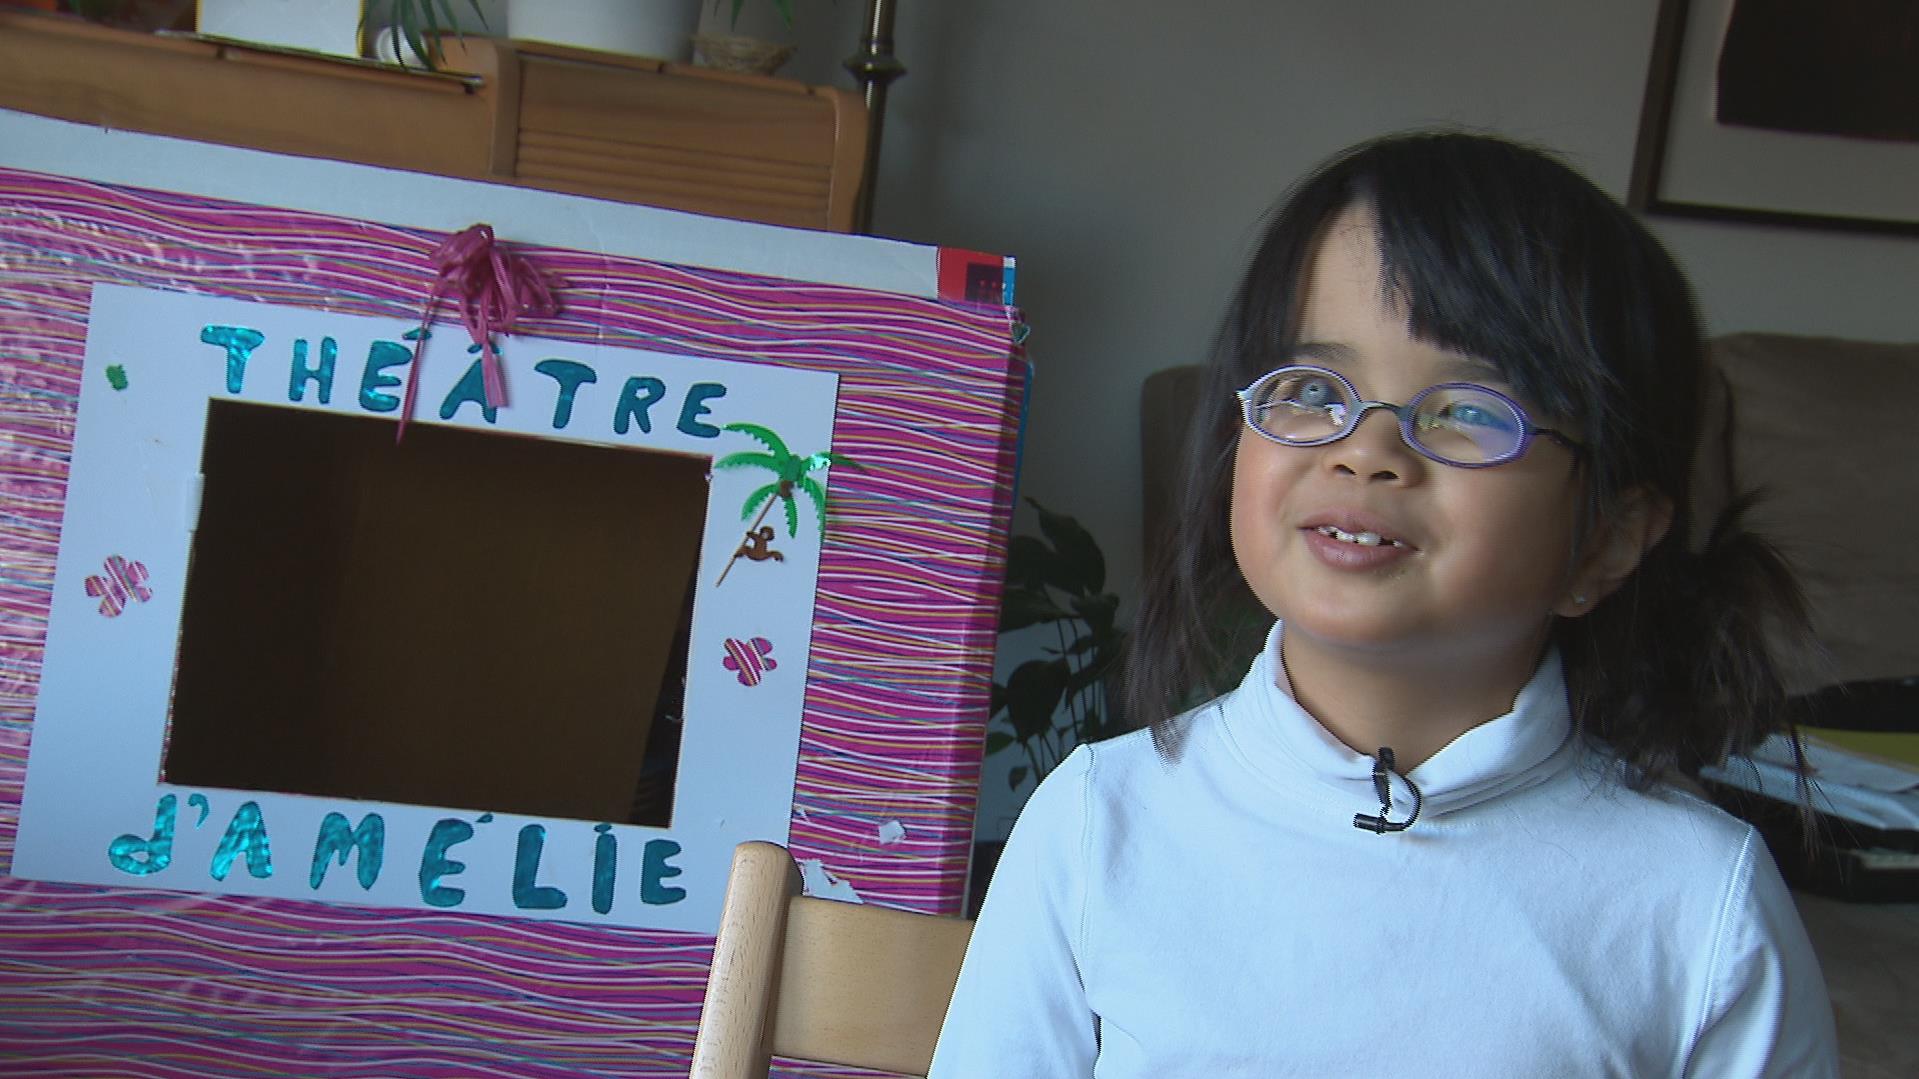 Championne de poésie à 7 ans malgré un handicap visuel